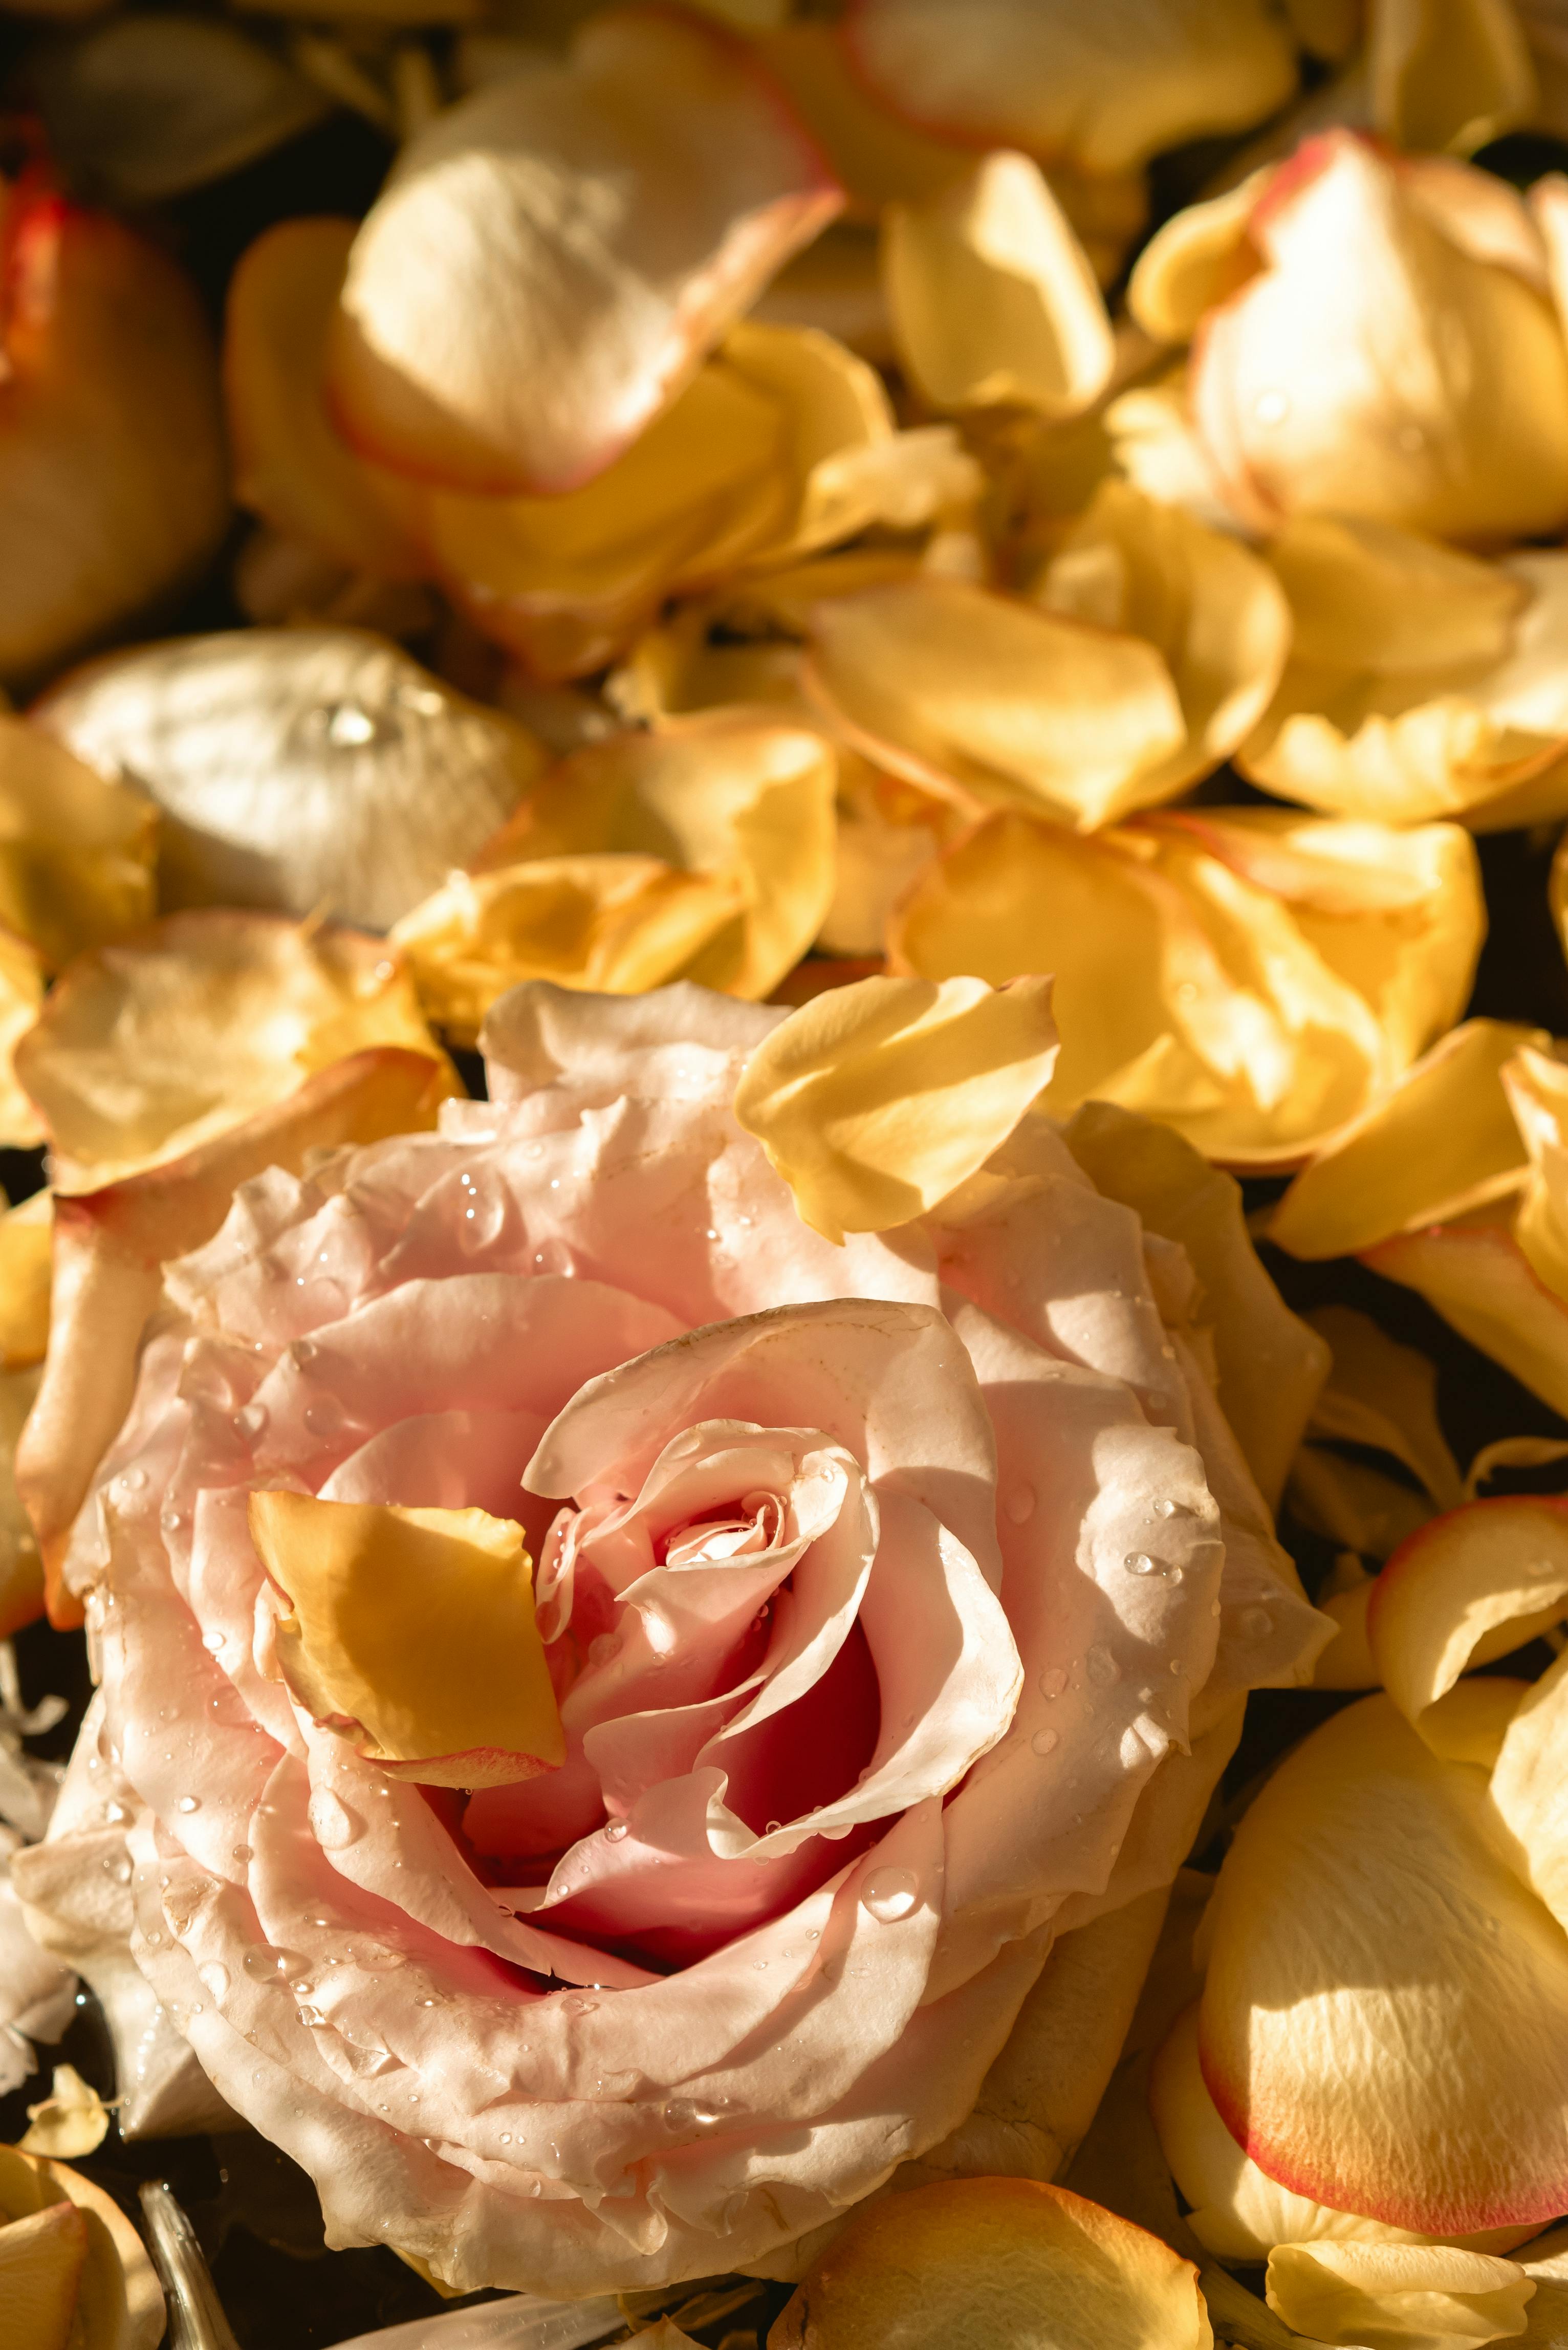 Hình Nền Hoa Anh đào Rơi Tải Về Miễn Phí Hình ảnh Đẹp hoa hồng Sáng Tạo  Từ Lovepik